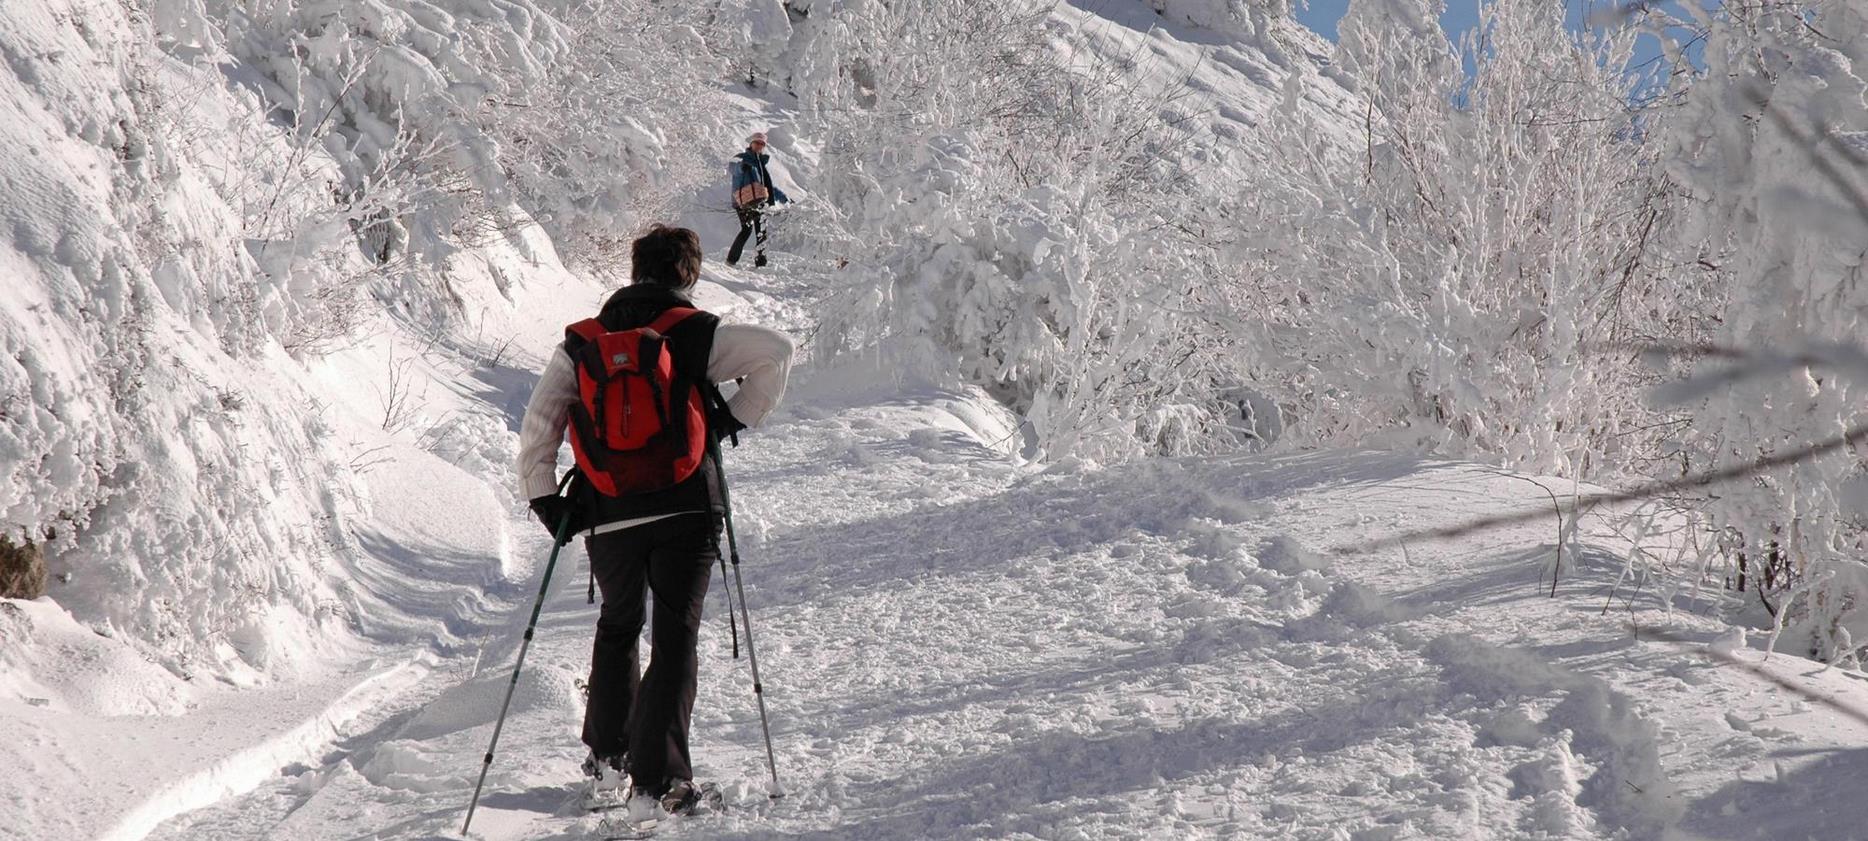 Super besse - Montee du Puy de Dôme dans la neige